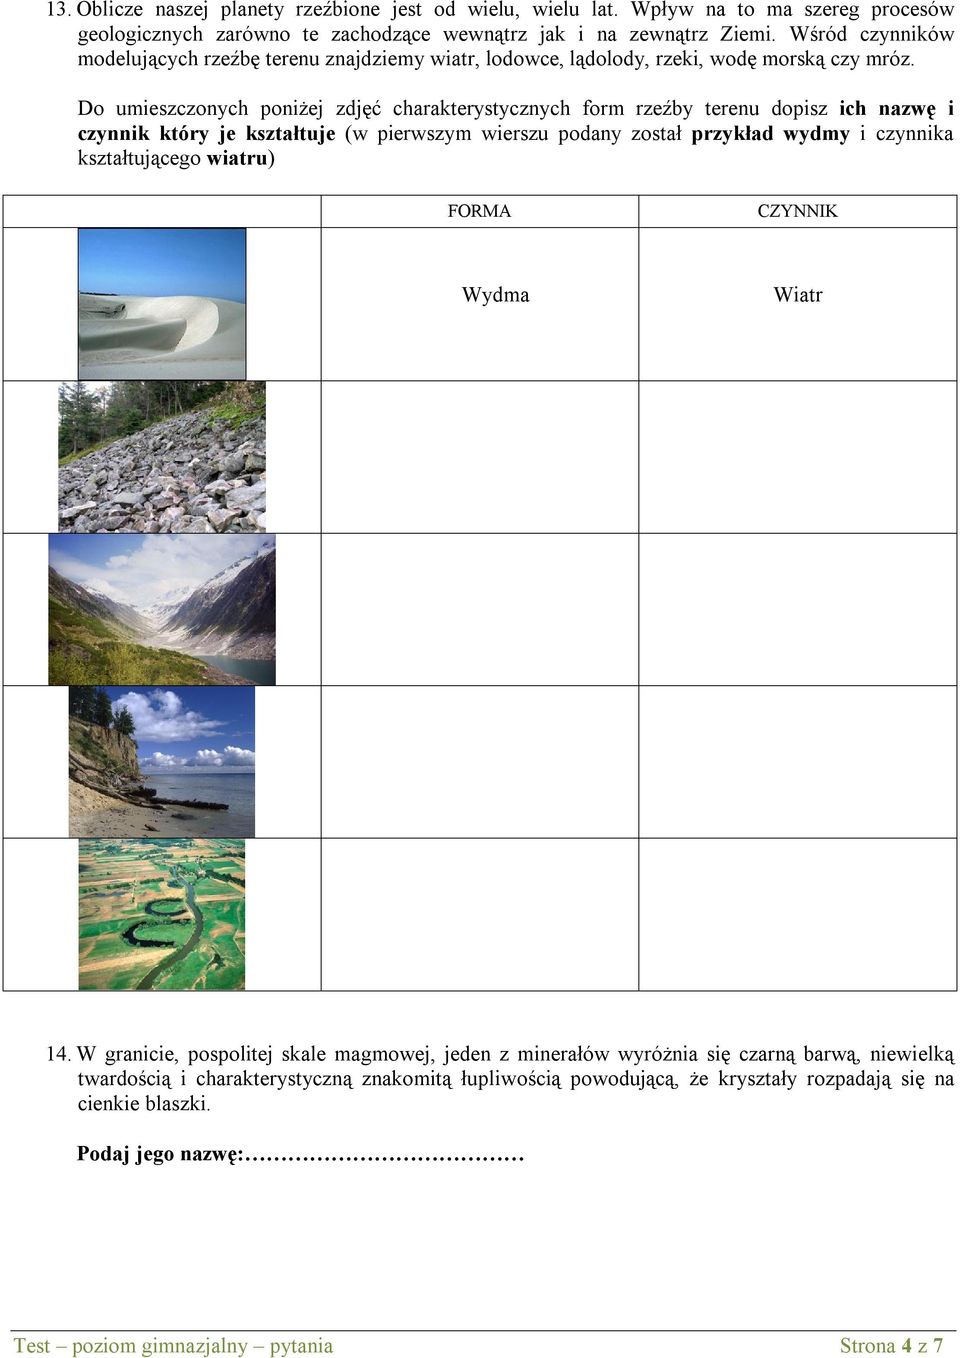 Do umieszczonych poniżej zdjęć charakterystycznych form rzeźby terenu dopisz ich nazwę i czynnik który je kształtuje (w pierwszym wierszu podany został przykład wydmy i czynnika kształtującego